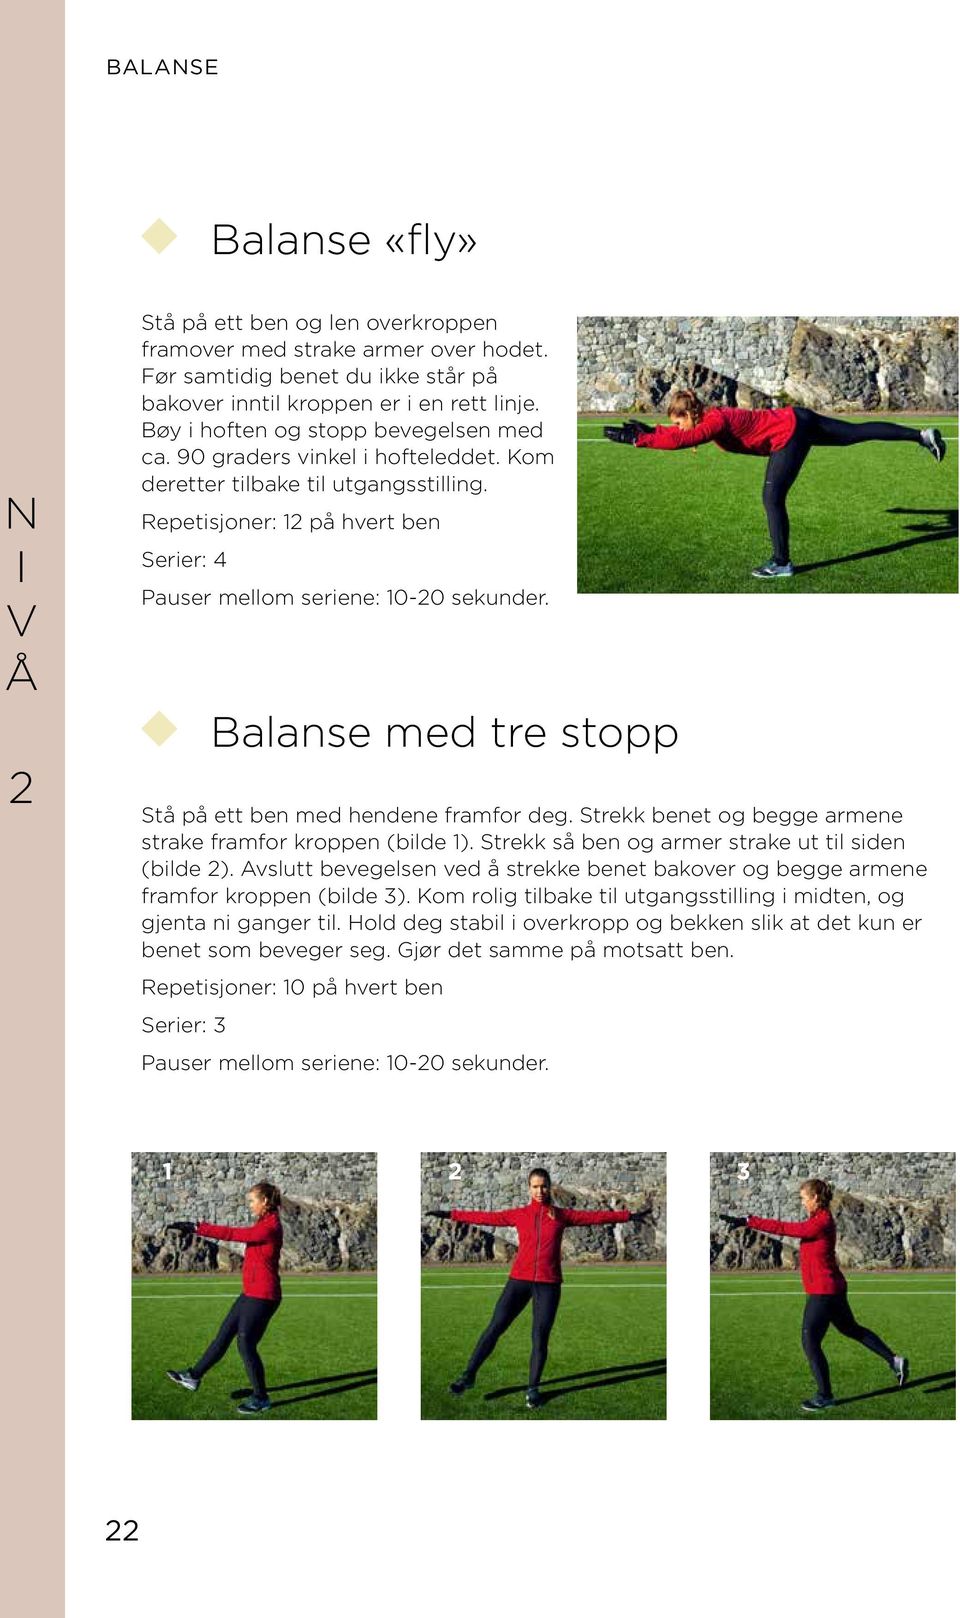 Repetisjoner: 1 på hvert ben Serier: 4 Balanse med tre stopp Stå på ett ben med hendene framfor deg. Strekk benet og begge armene strake framfor kroppen (bilde 1).